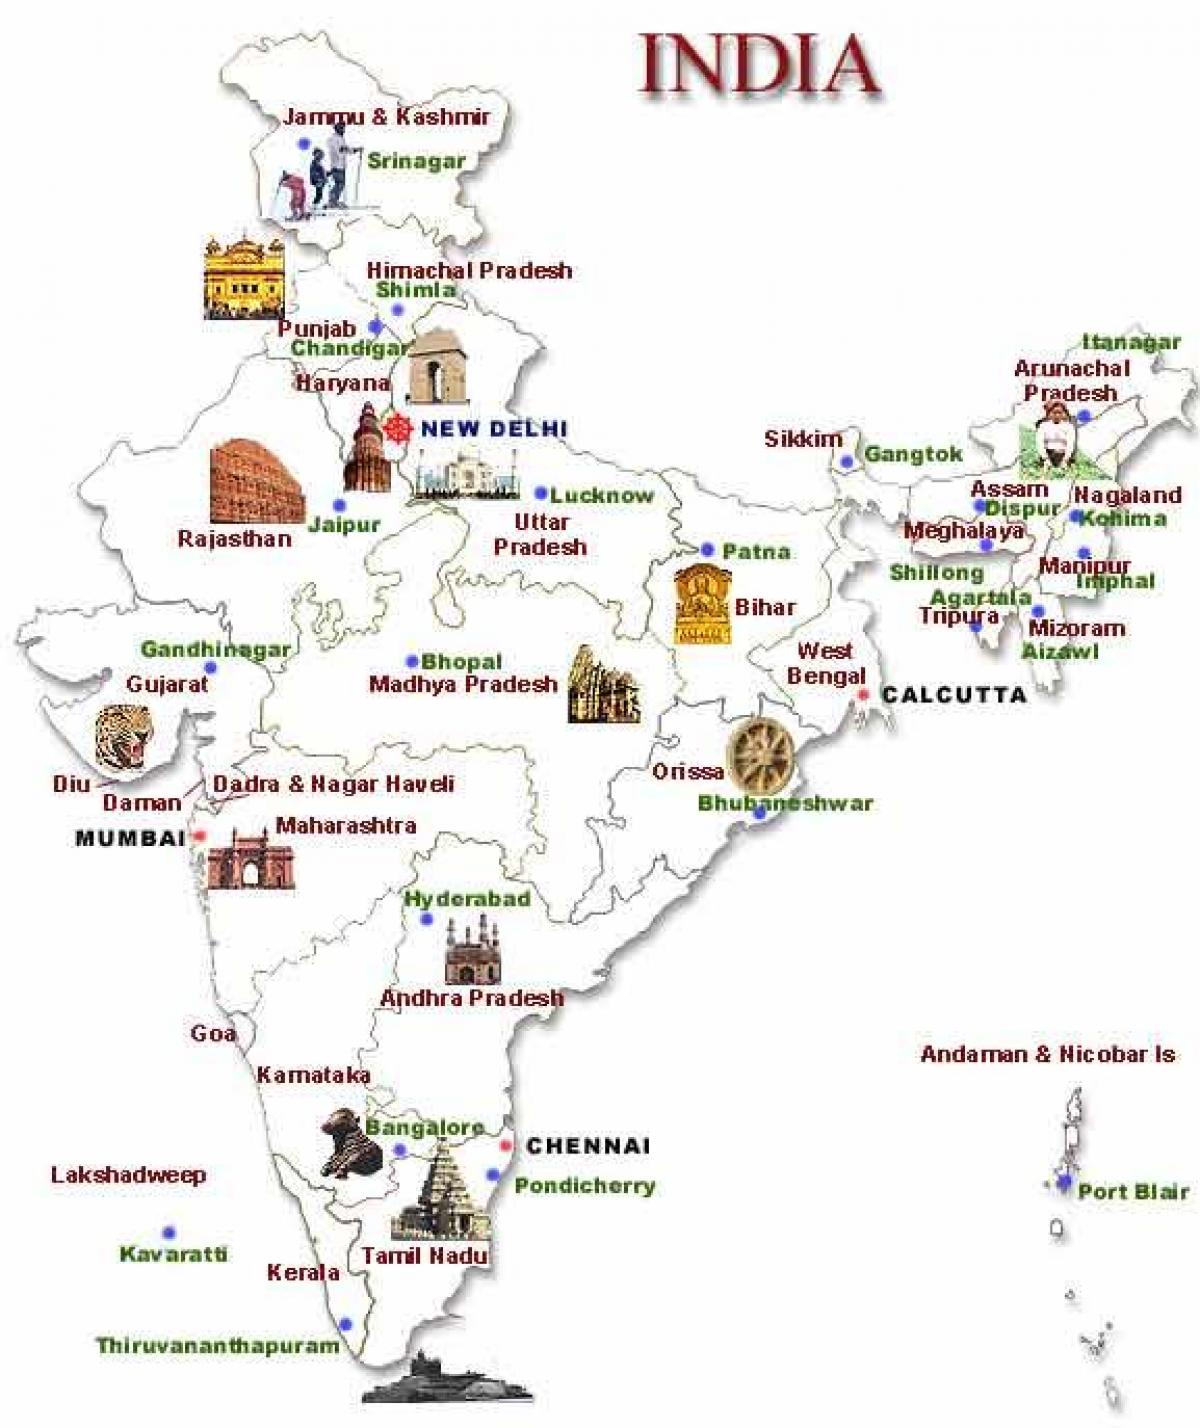 la carte touristique de l'Inde